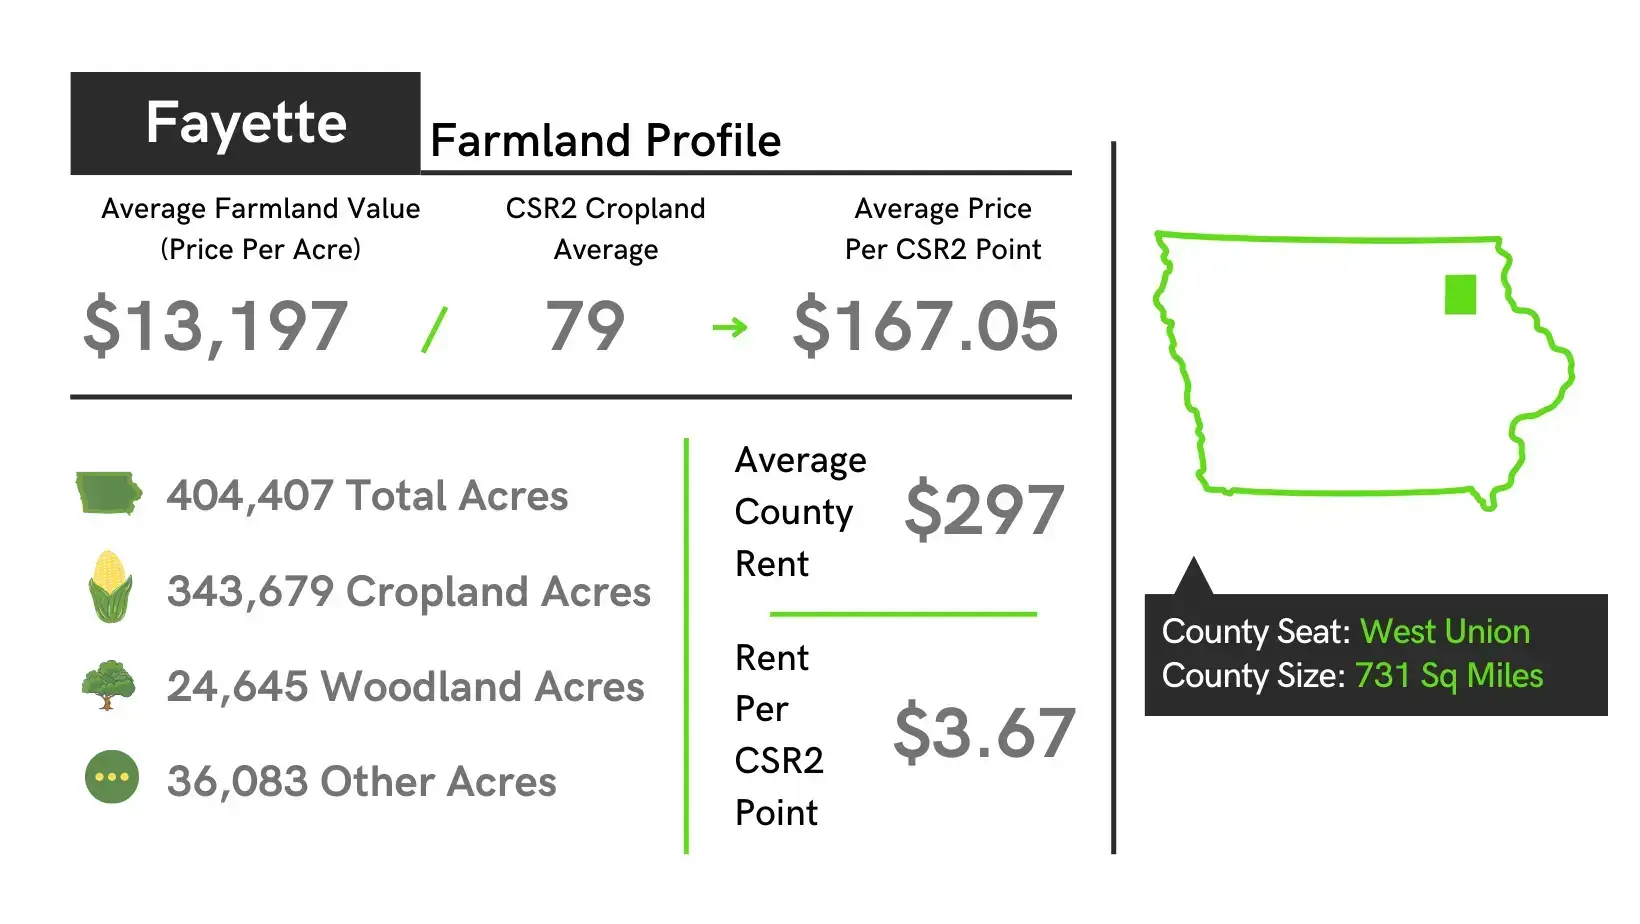 Fayette County Iowa Farmland Value Profile